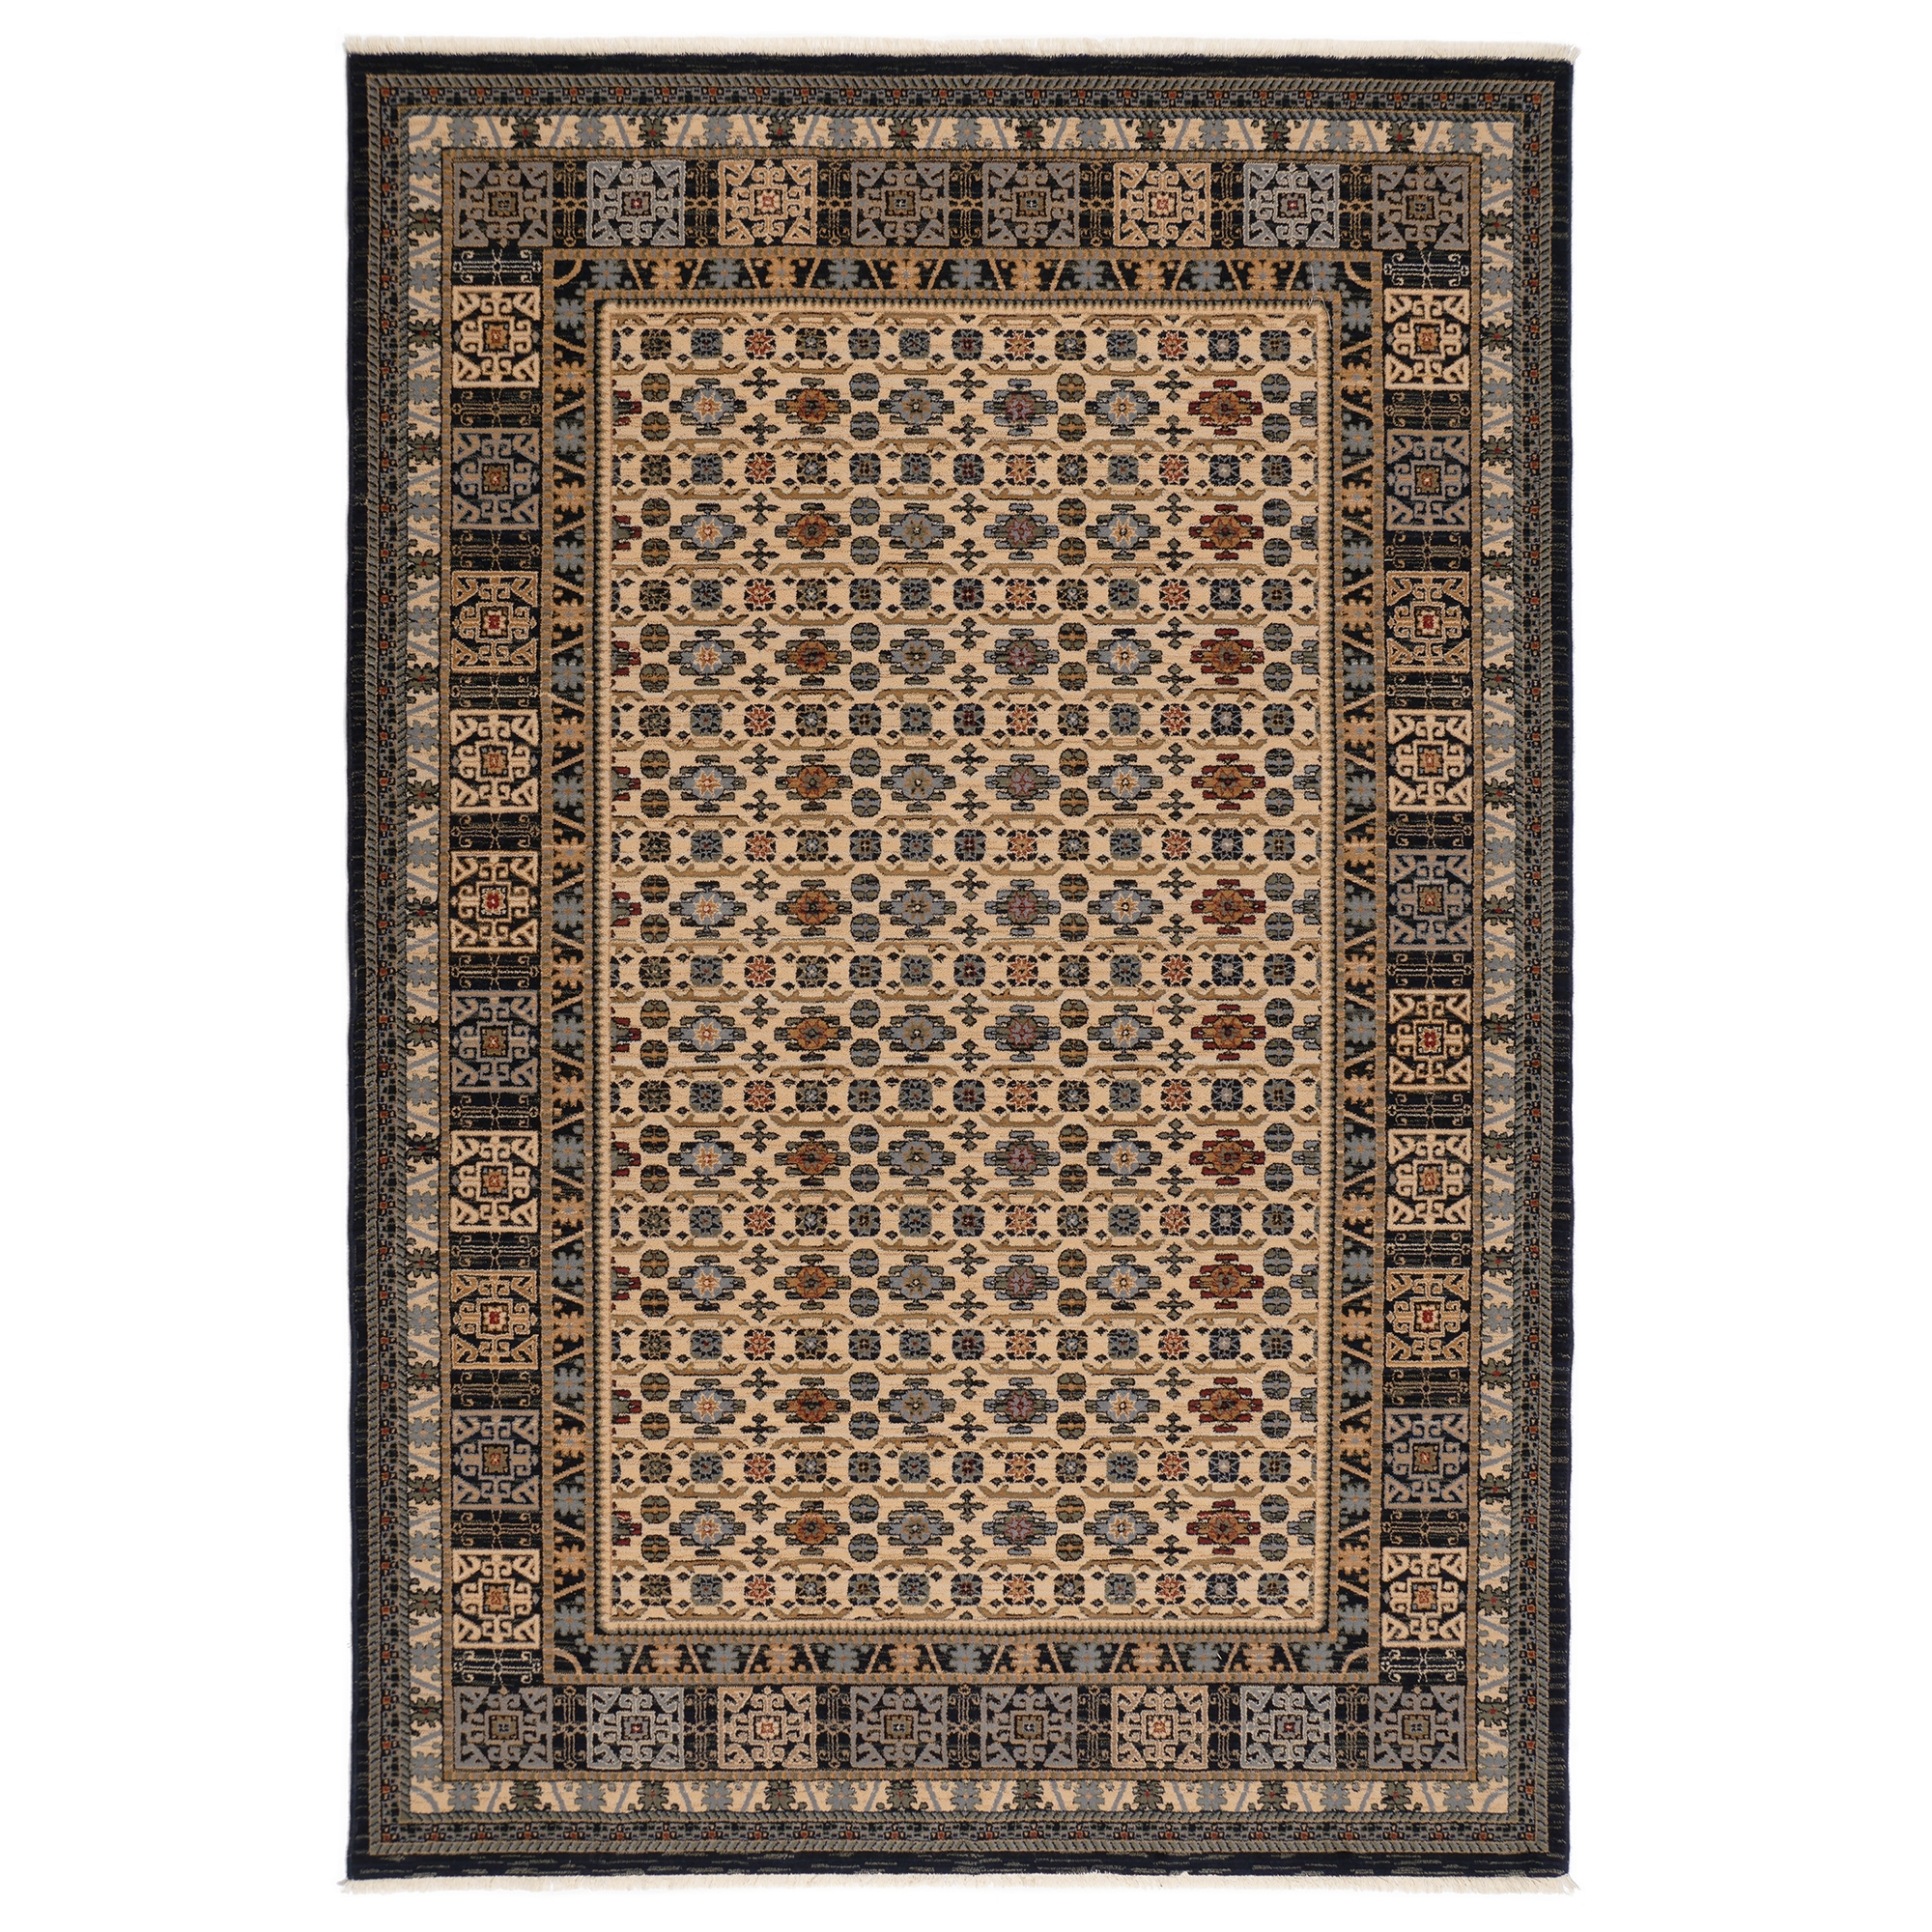 Covor living / dormitor Carpeta Antique 64281-53551, 160 x 230 cm, lana, maro + bej + albastru, dreptunghiular